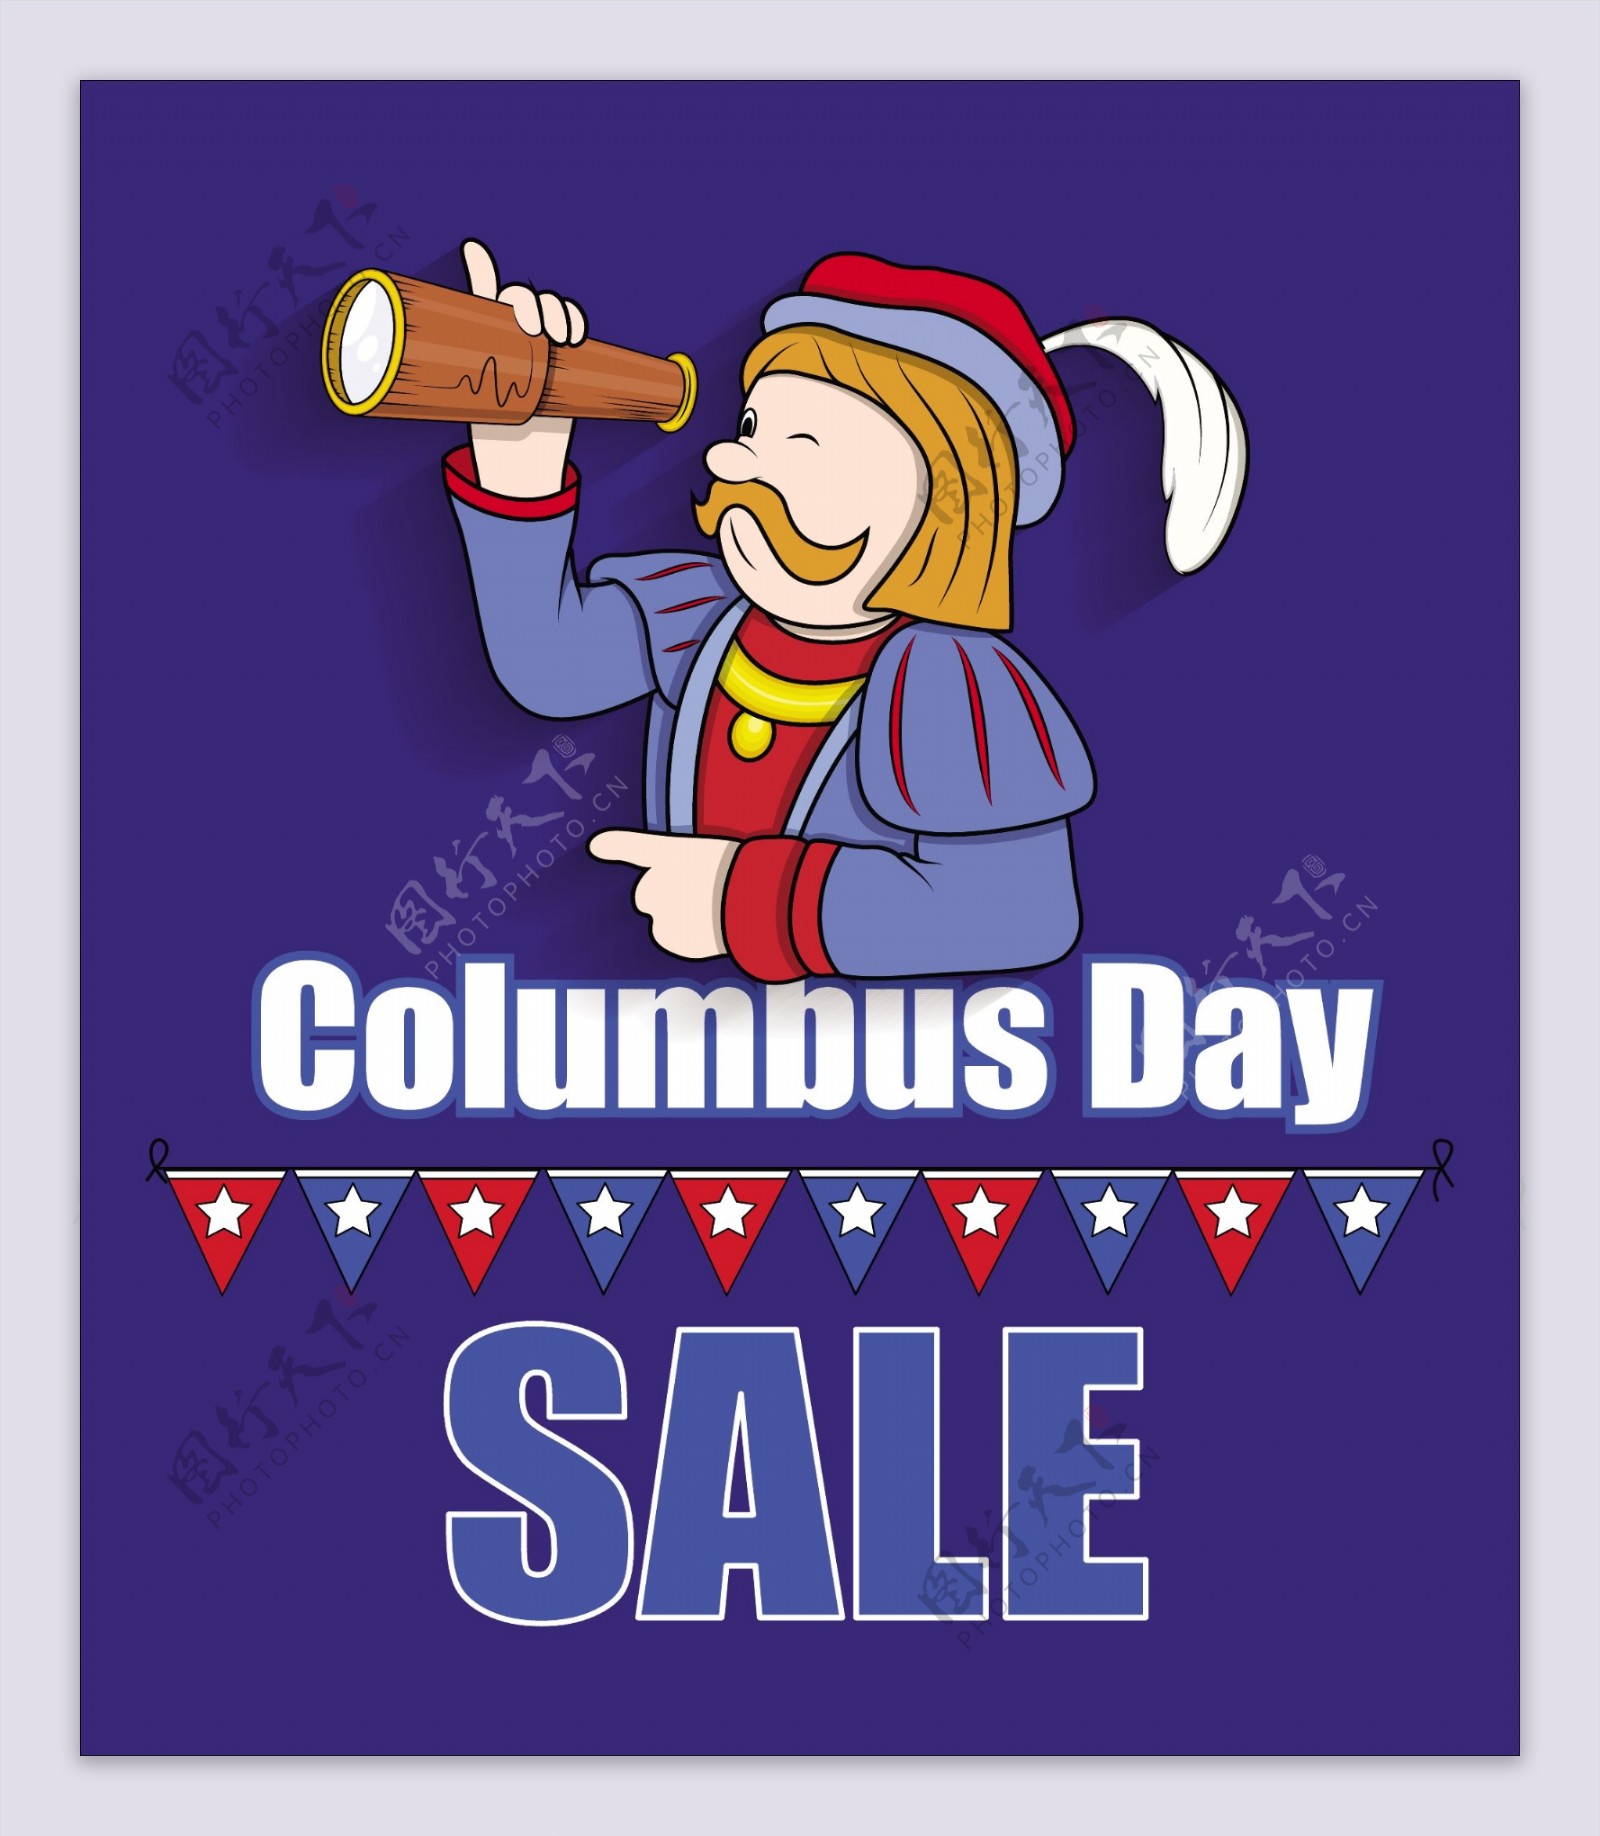 哥伦布日销售图形